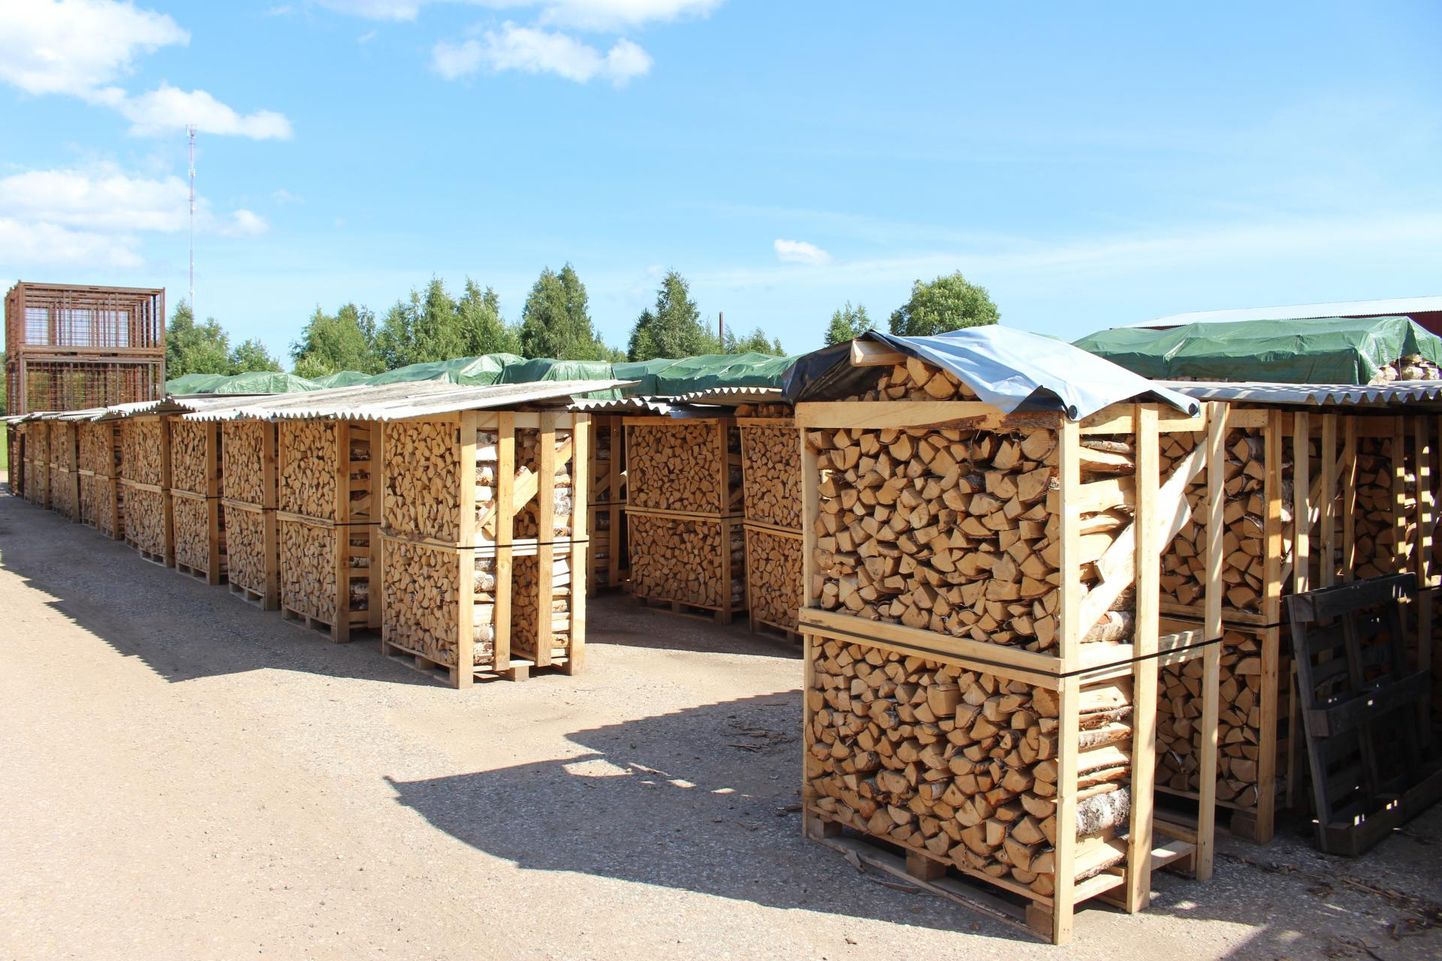 Metsamaterjali hinnad on praegu kõrged ja soosivad puidu müüjaid. Pildil on OÜ Värska Laht laoplats. Tomi Saluveer